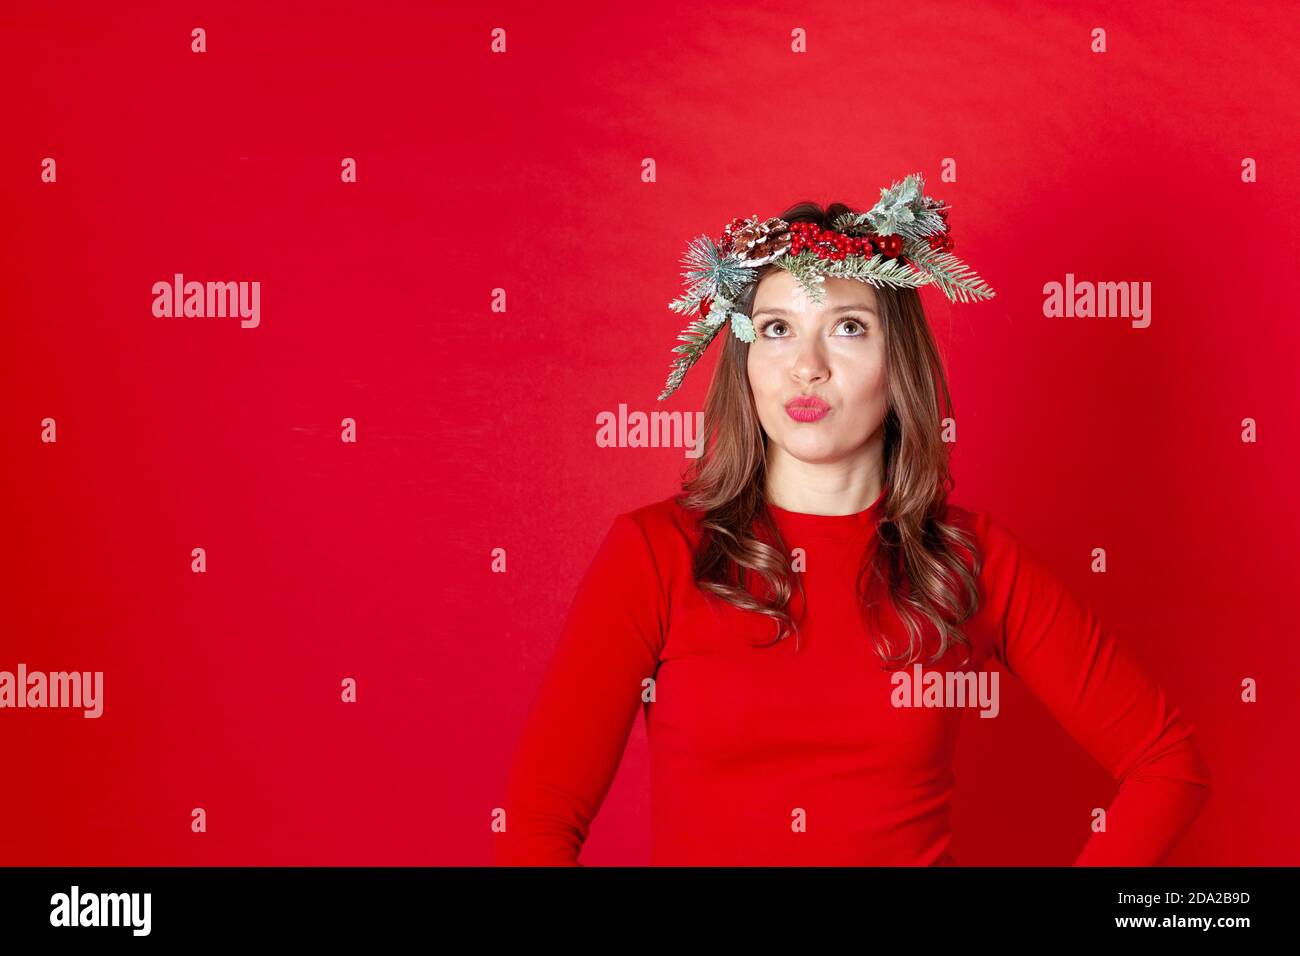 Gros plan d'une jeune femme réfléchie dans une couronne de Noël, les yeux regardant vers le haut, les lèvres comme le canard, sur un fond rouge Banque D'Images